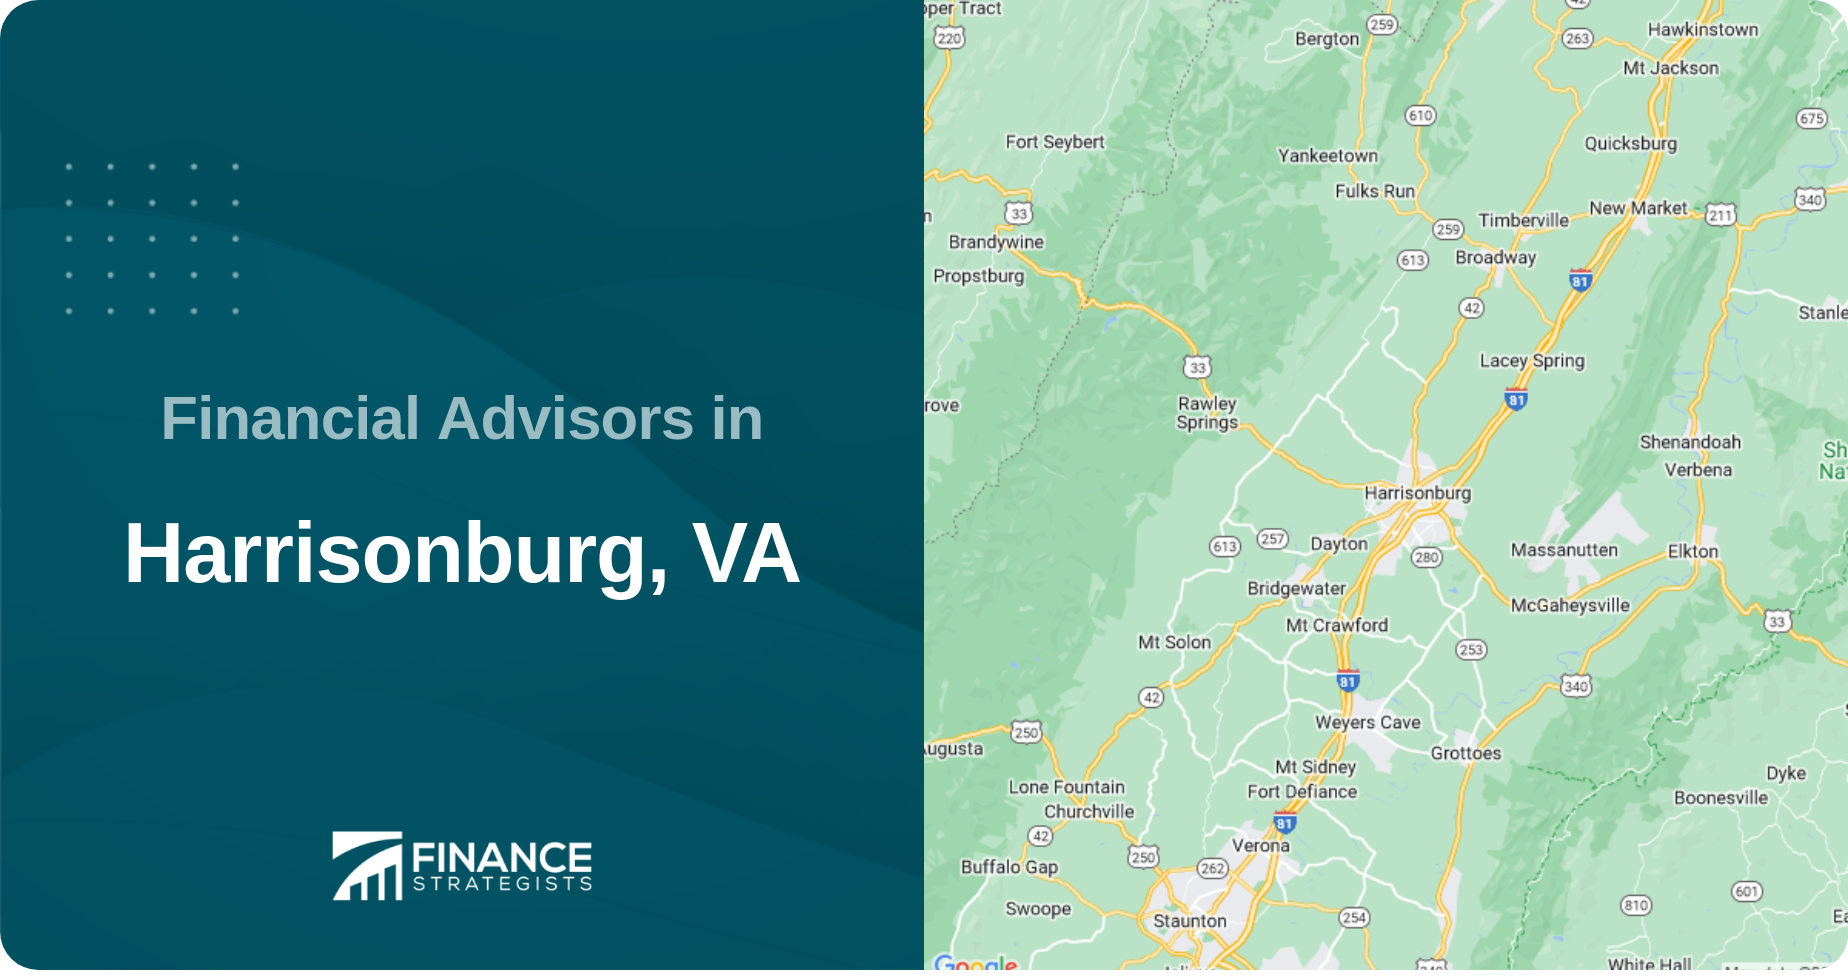 Financial Advisors in Harrisonburg, VA